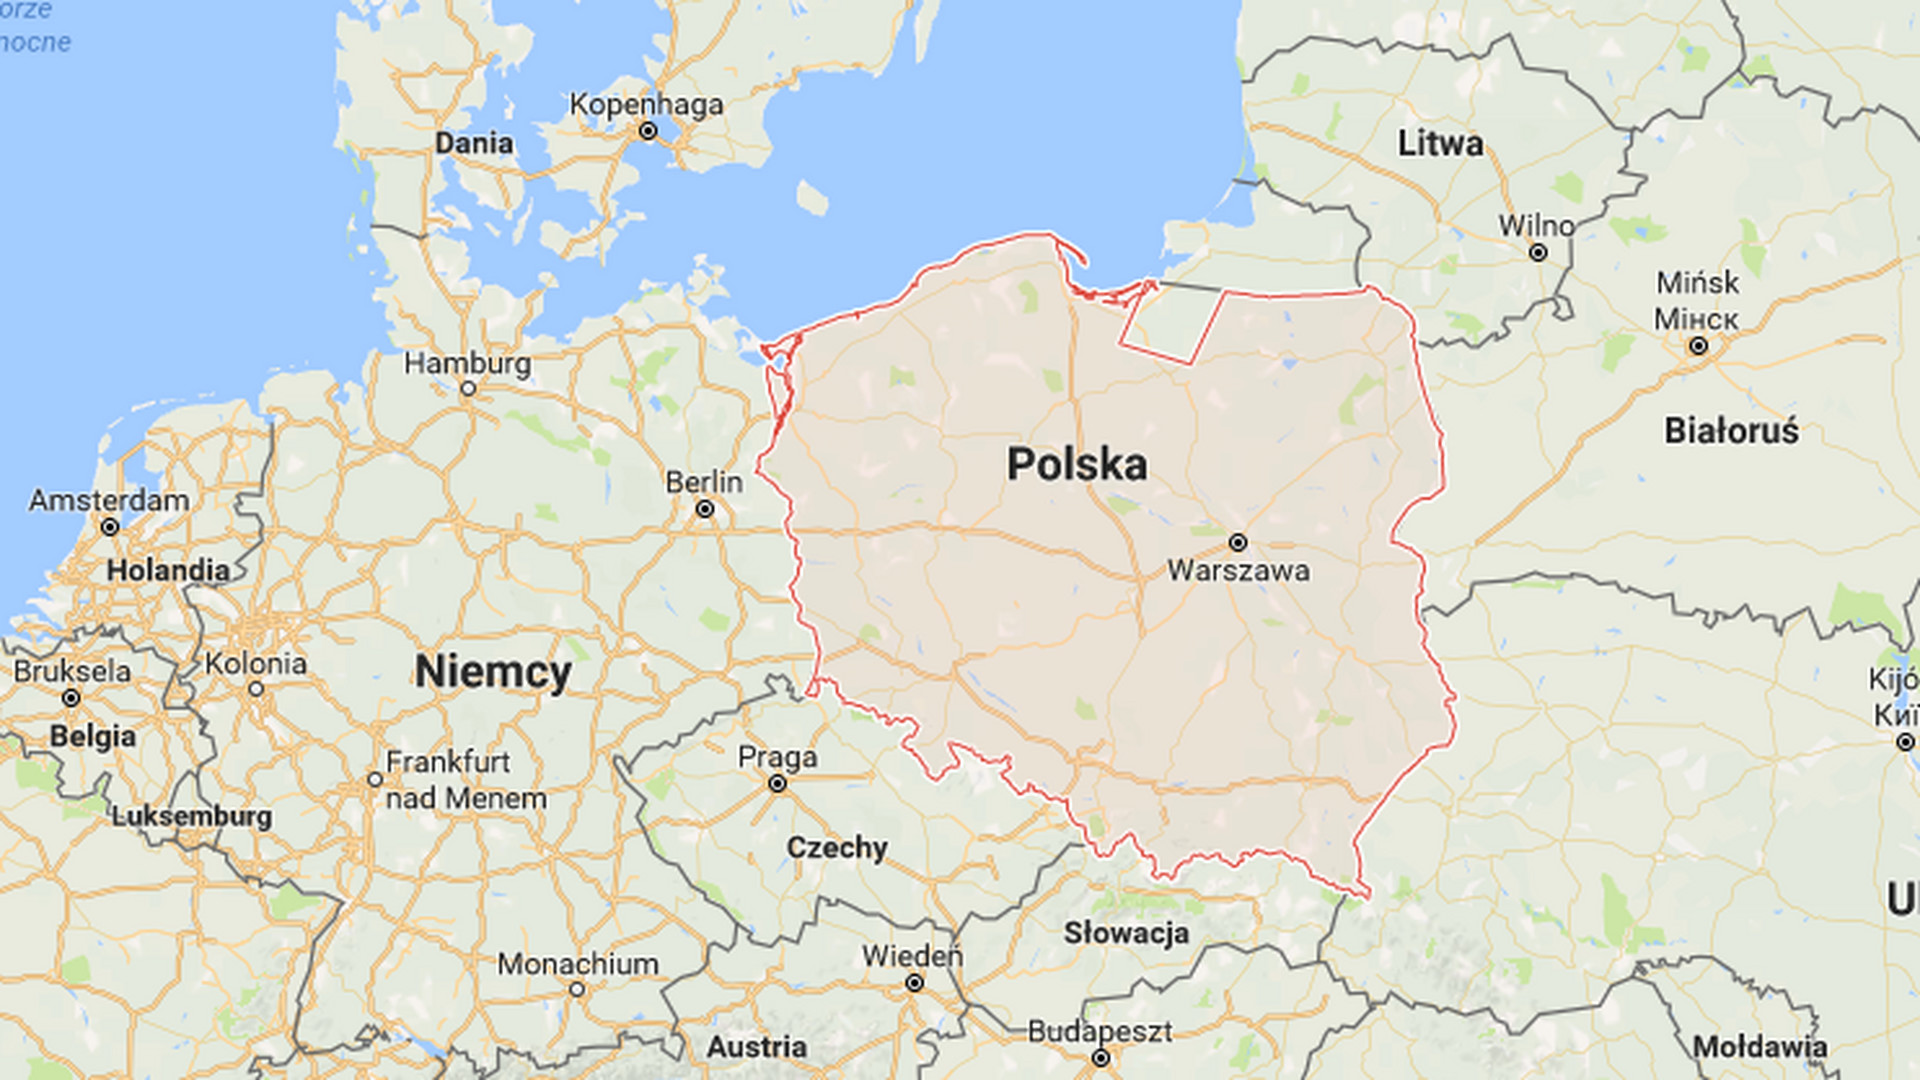 Mapa Polski w Google: brakuje sporego fragmentu. Co się stało? - Noizz